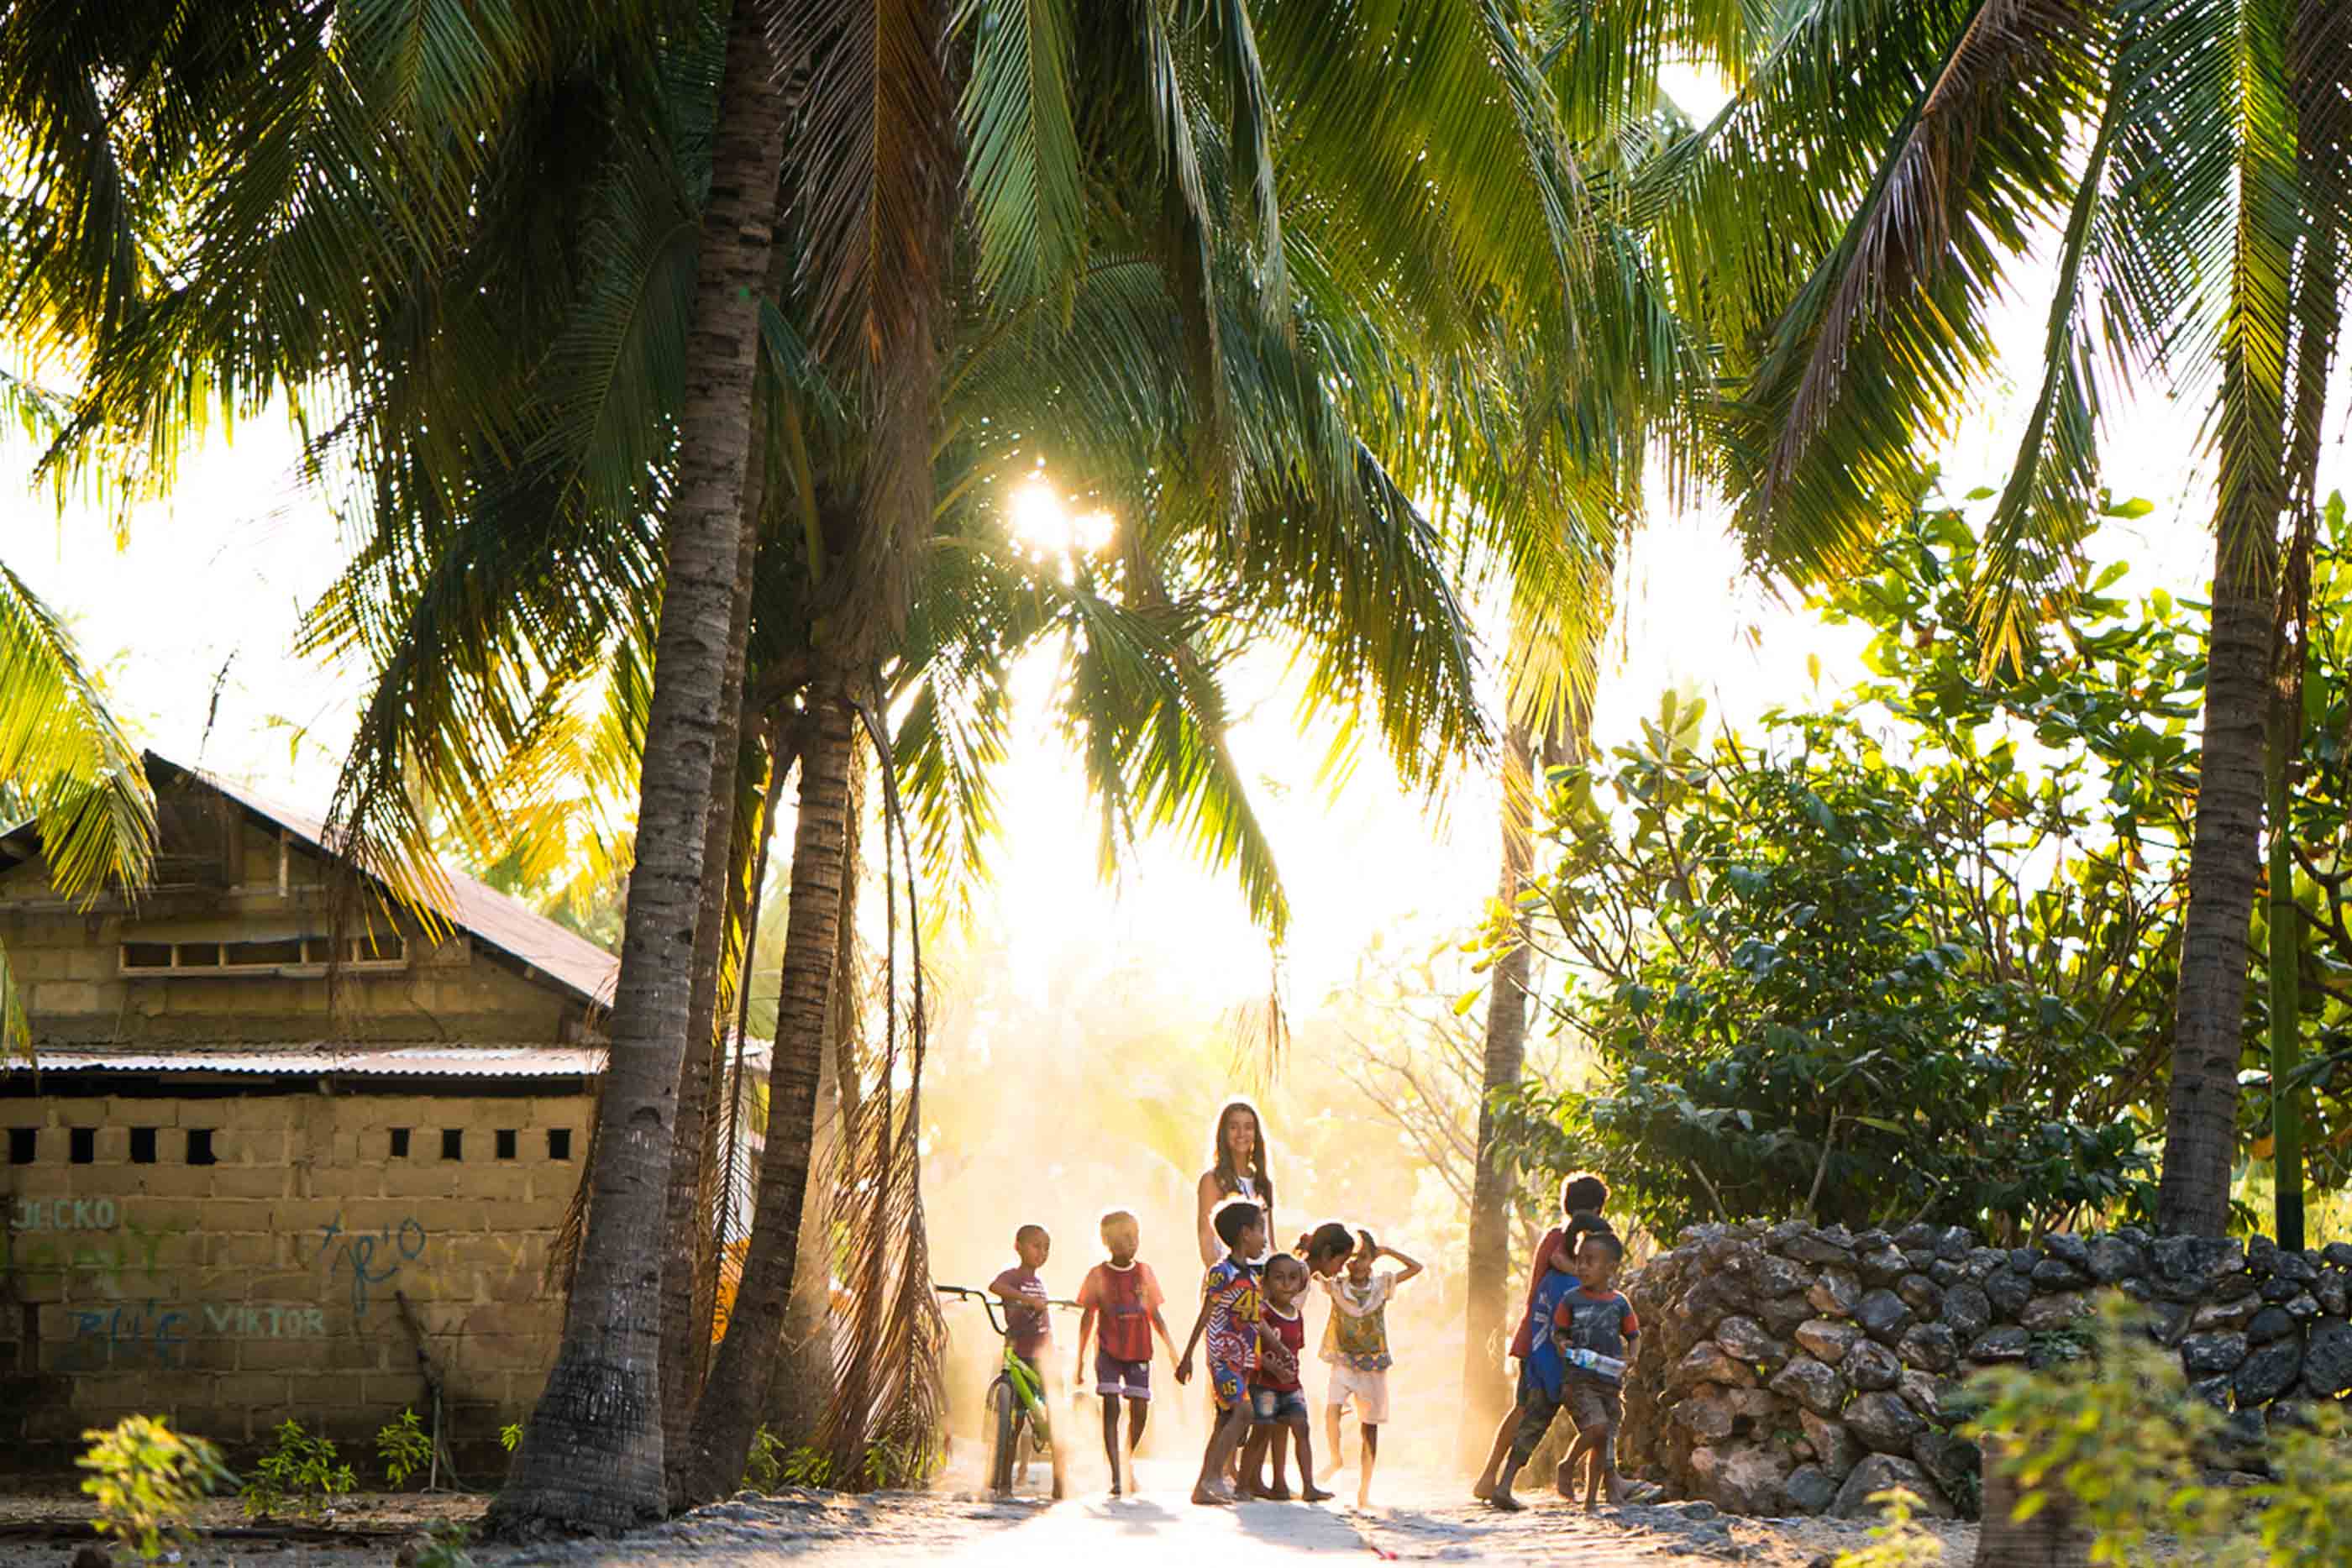 Paisagem tropical com palmeiras à volta e uma casa do loado esquerda da imagem. No centro, crianças e uma senhora.